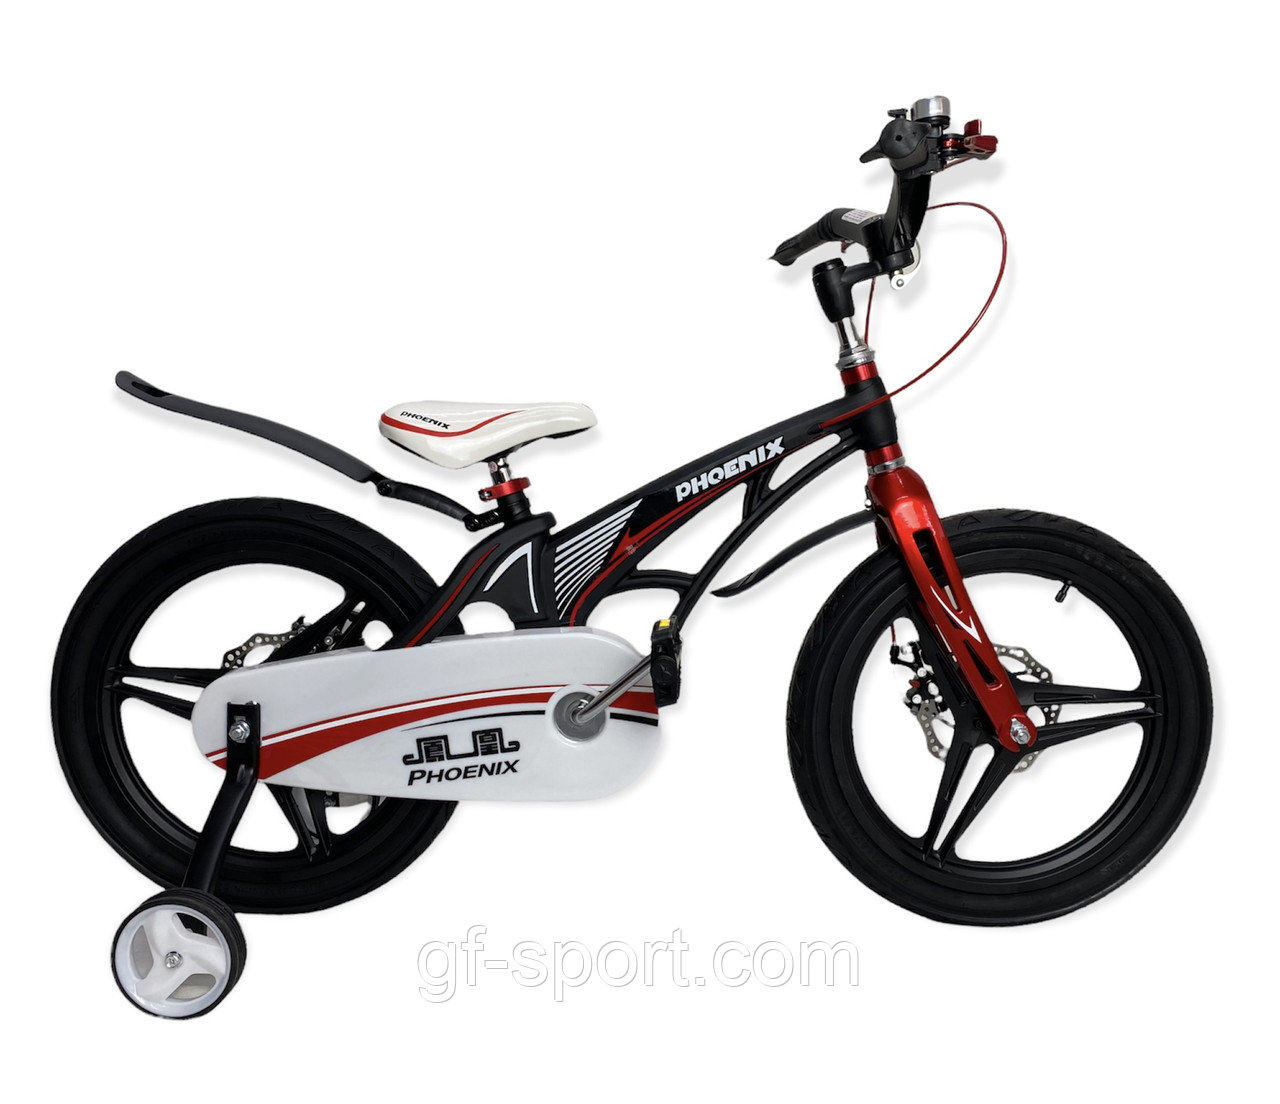 Велосипед Phoenix черный алюминиевый сплав оригинал детский с холостым ходом 18 размер (529-18)